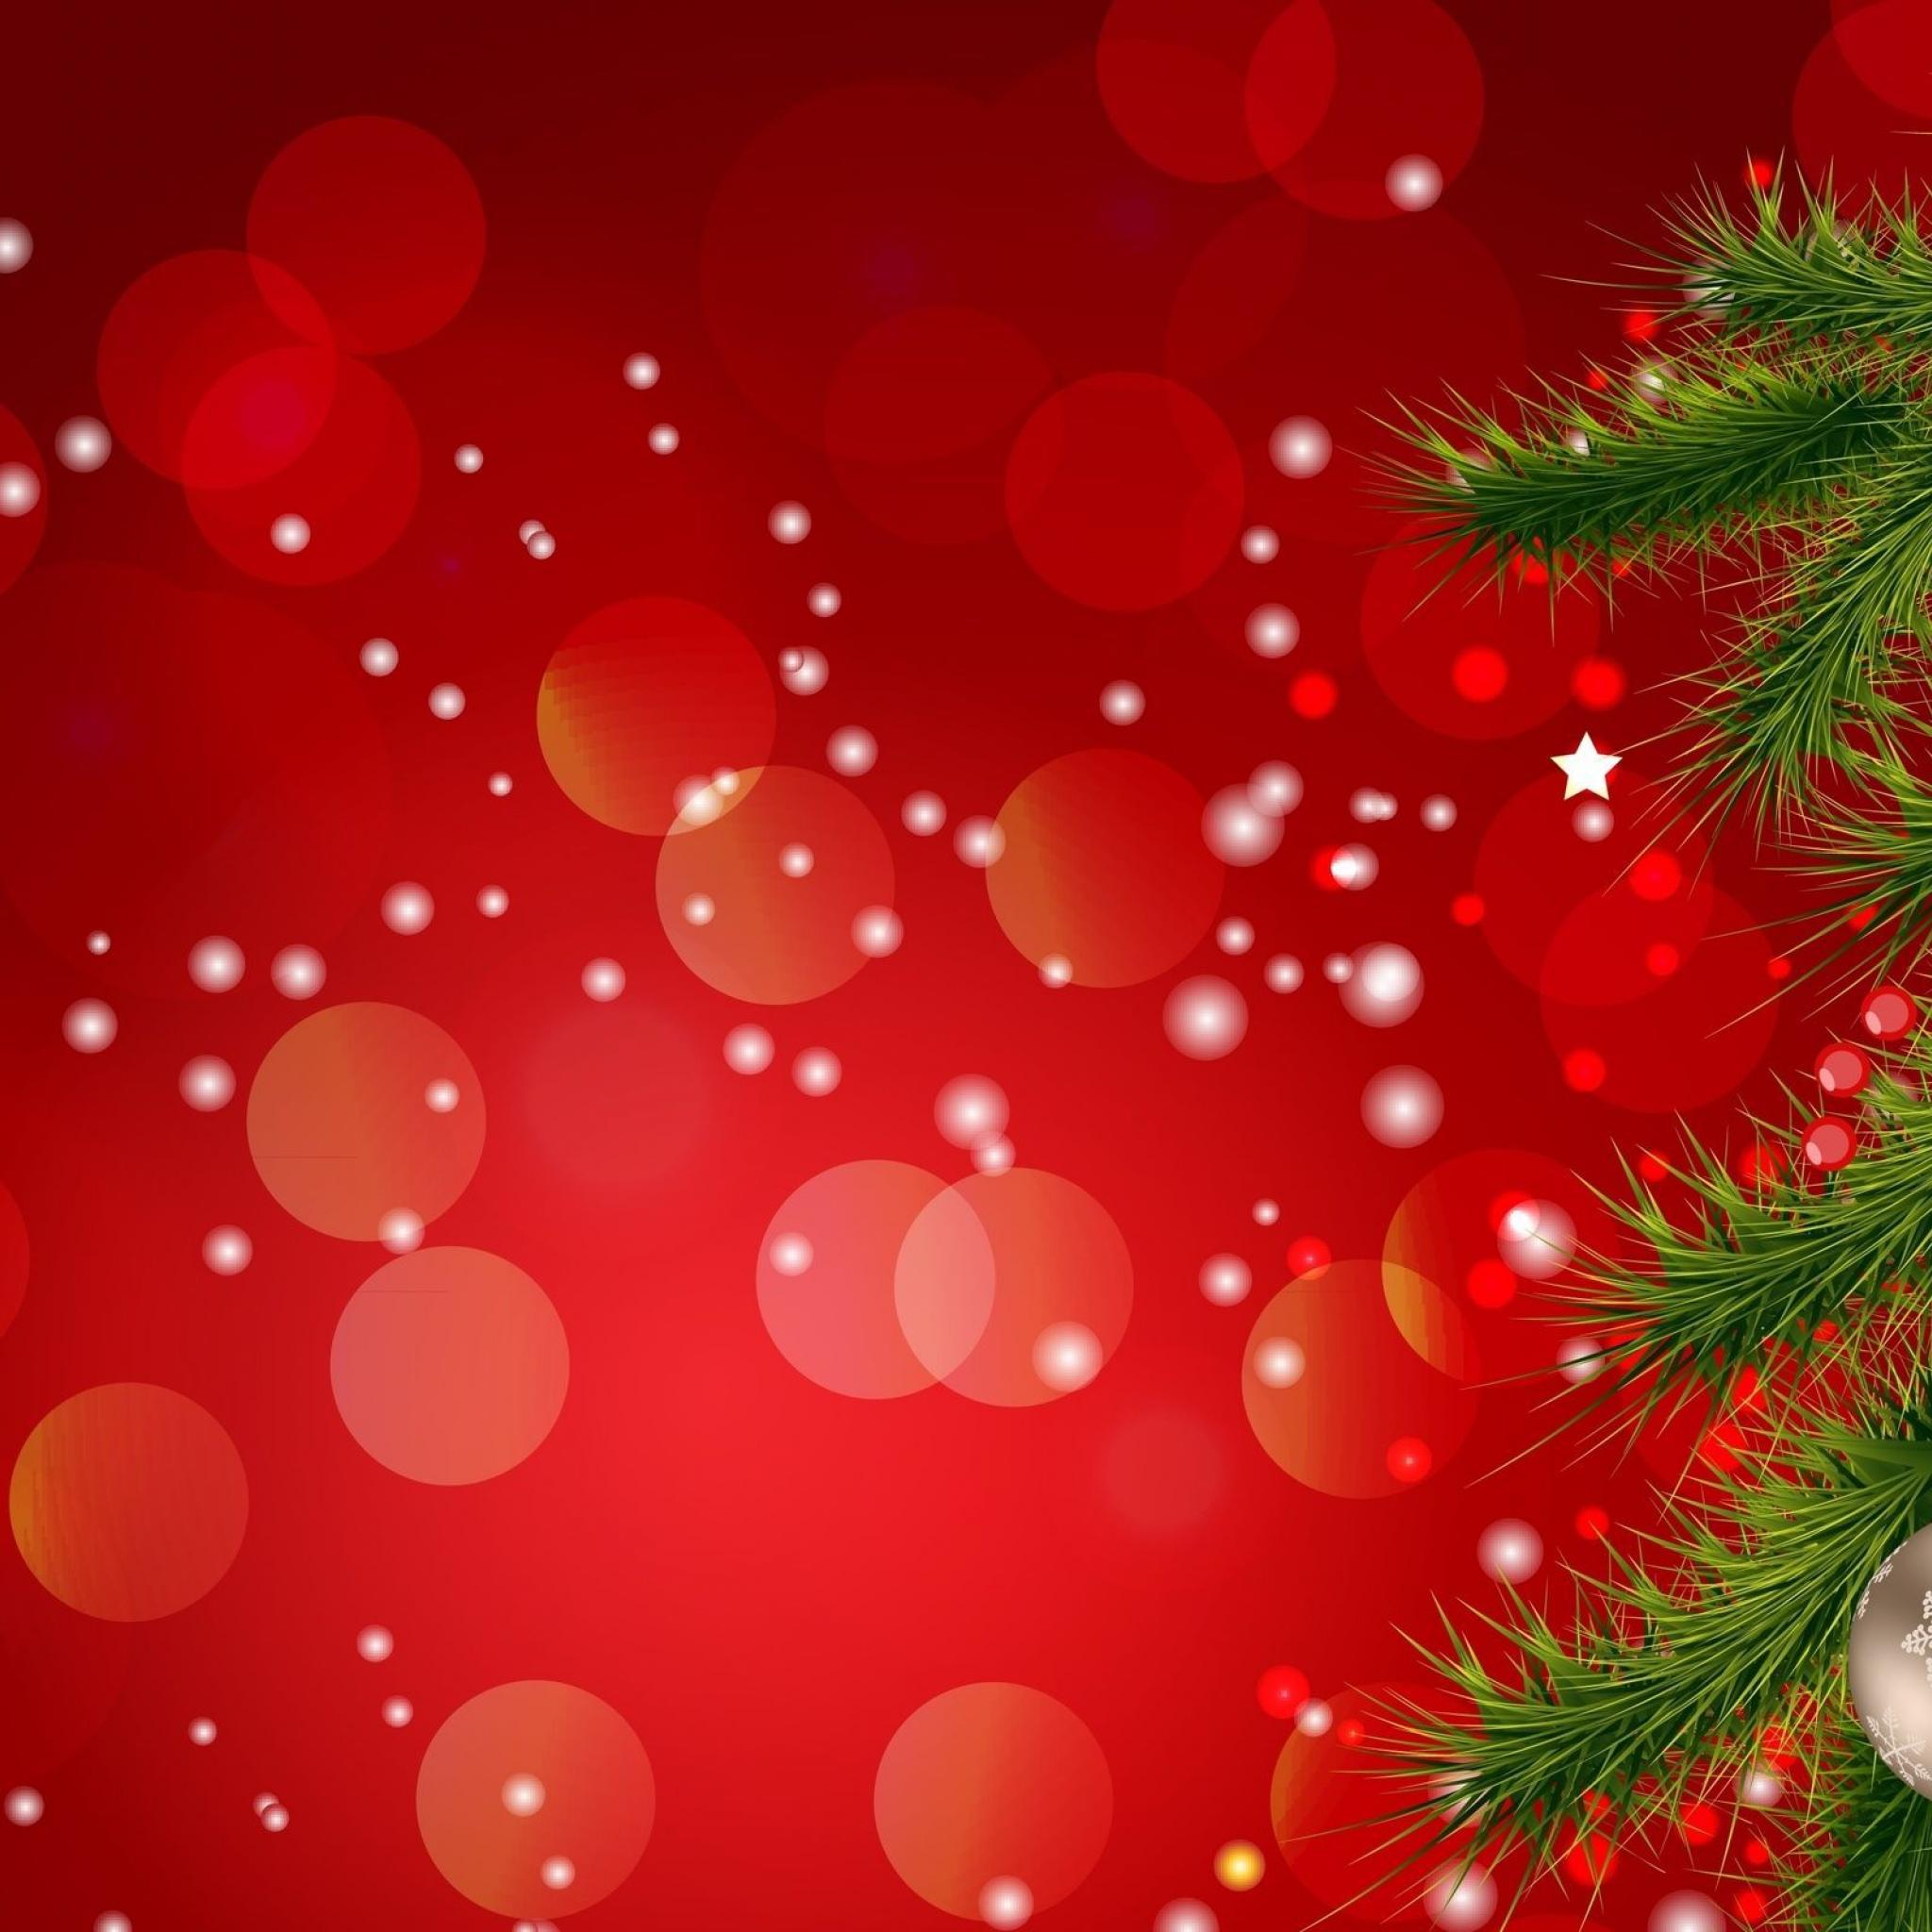 Baixe os wallpapers de Natal para iPhone, iPod touch e iPad » Blog do